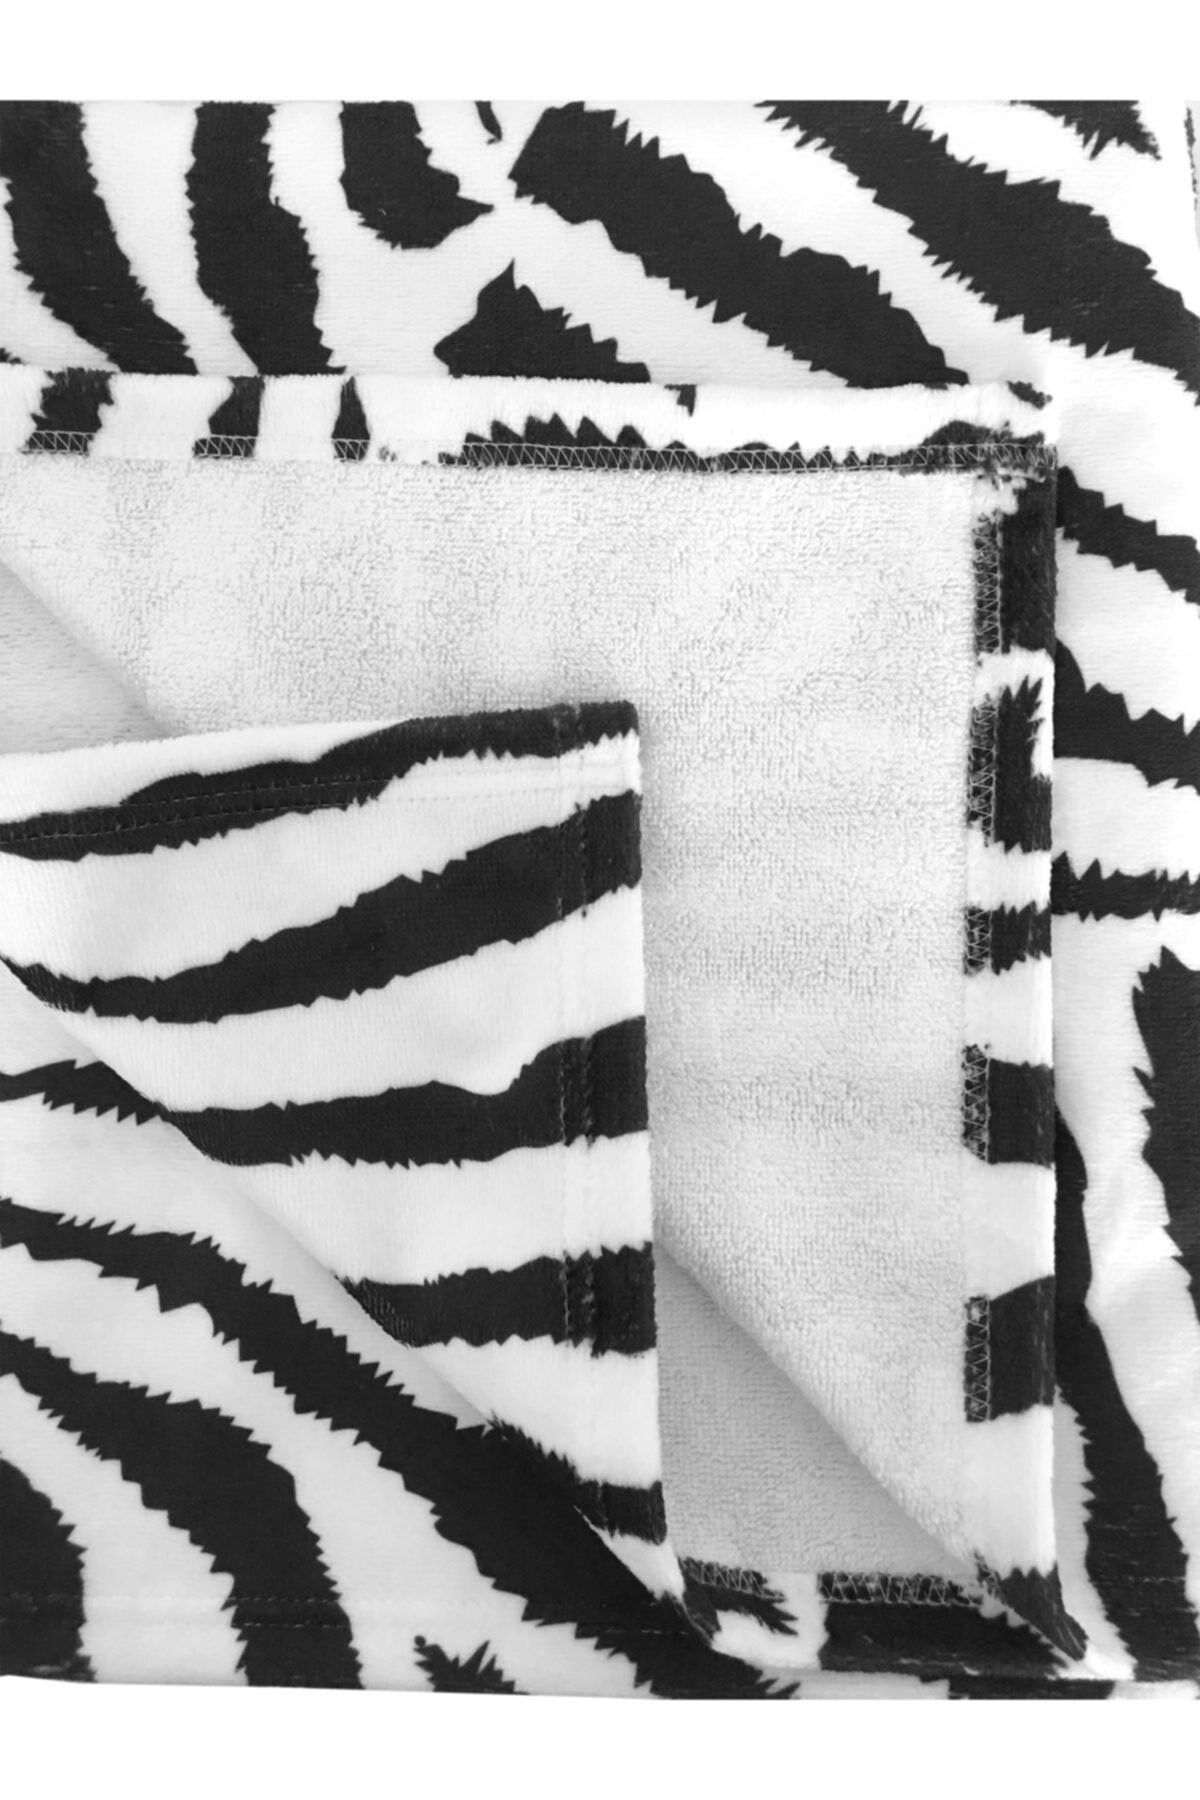 HAMUR Plaj Havlusu Zebra Siyah 80x150 cm E43pr0650045hm